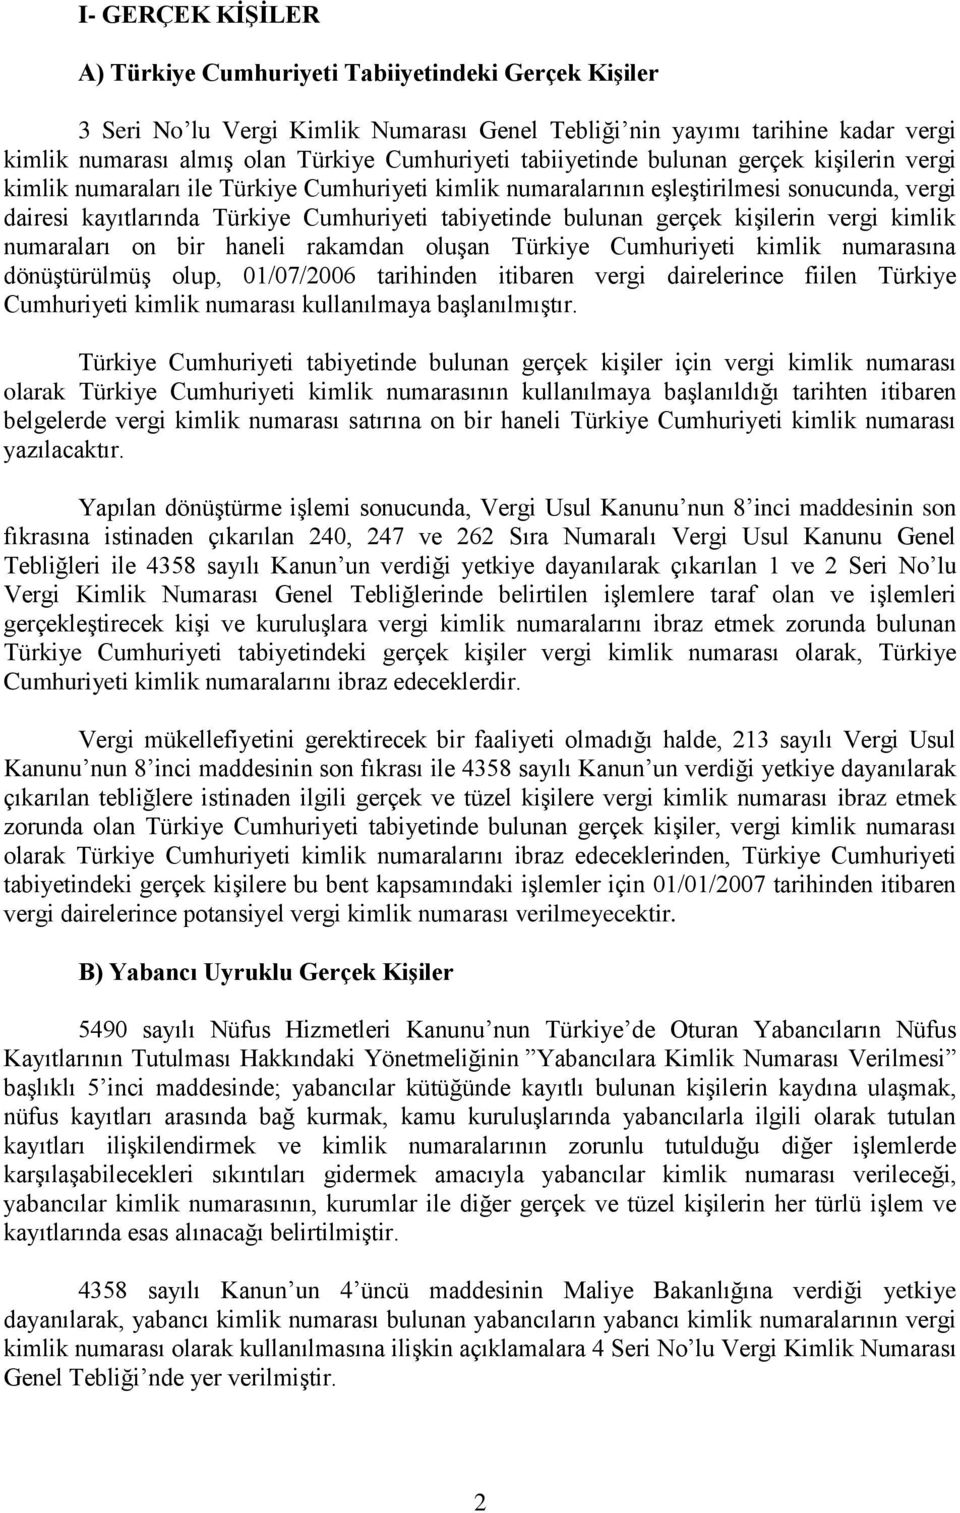 gerçek kişilerin vergi kimlik numaraları on bir haneli rakamdan oluşan Türkiye Cumhuriyeti kimlik numarasına dönüştürülmüş olup, 01/07/2006 tarihinden itibaren vergi dairelerince fiilen Türkiye